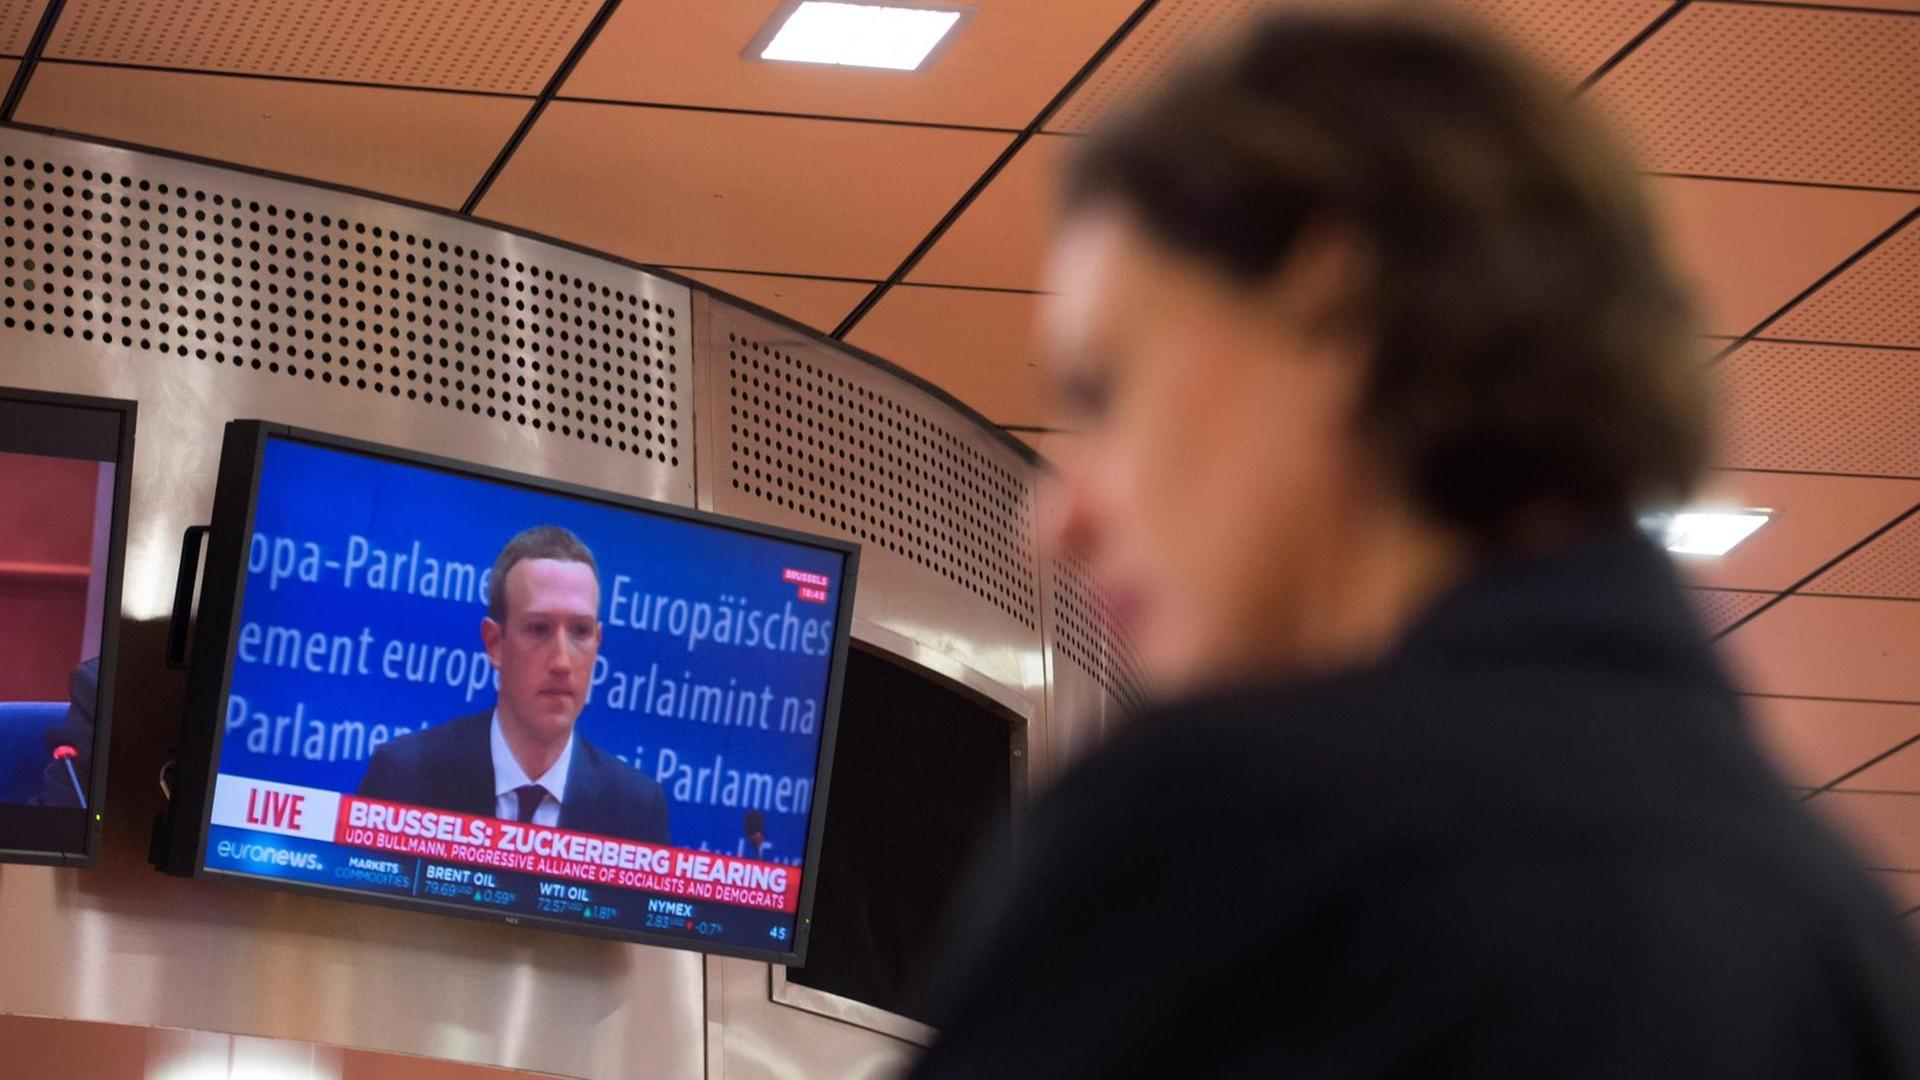 Die Anhörung von Facebook-Chef Mark Zuckerberg wird im Europäischen Parlament auf einem Bildschirm übertragen.